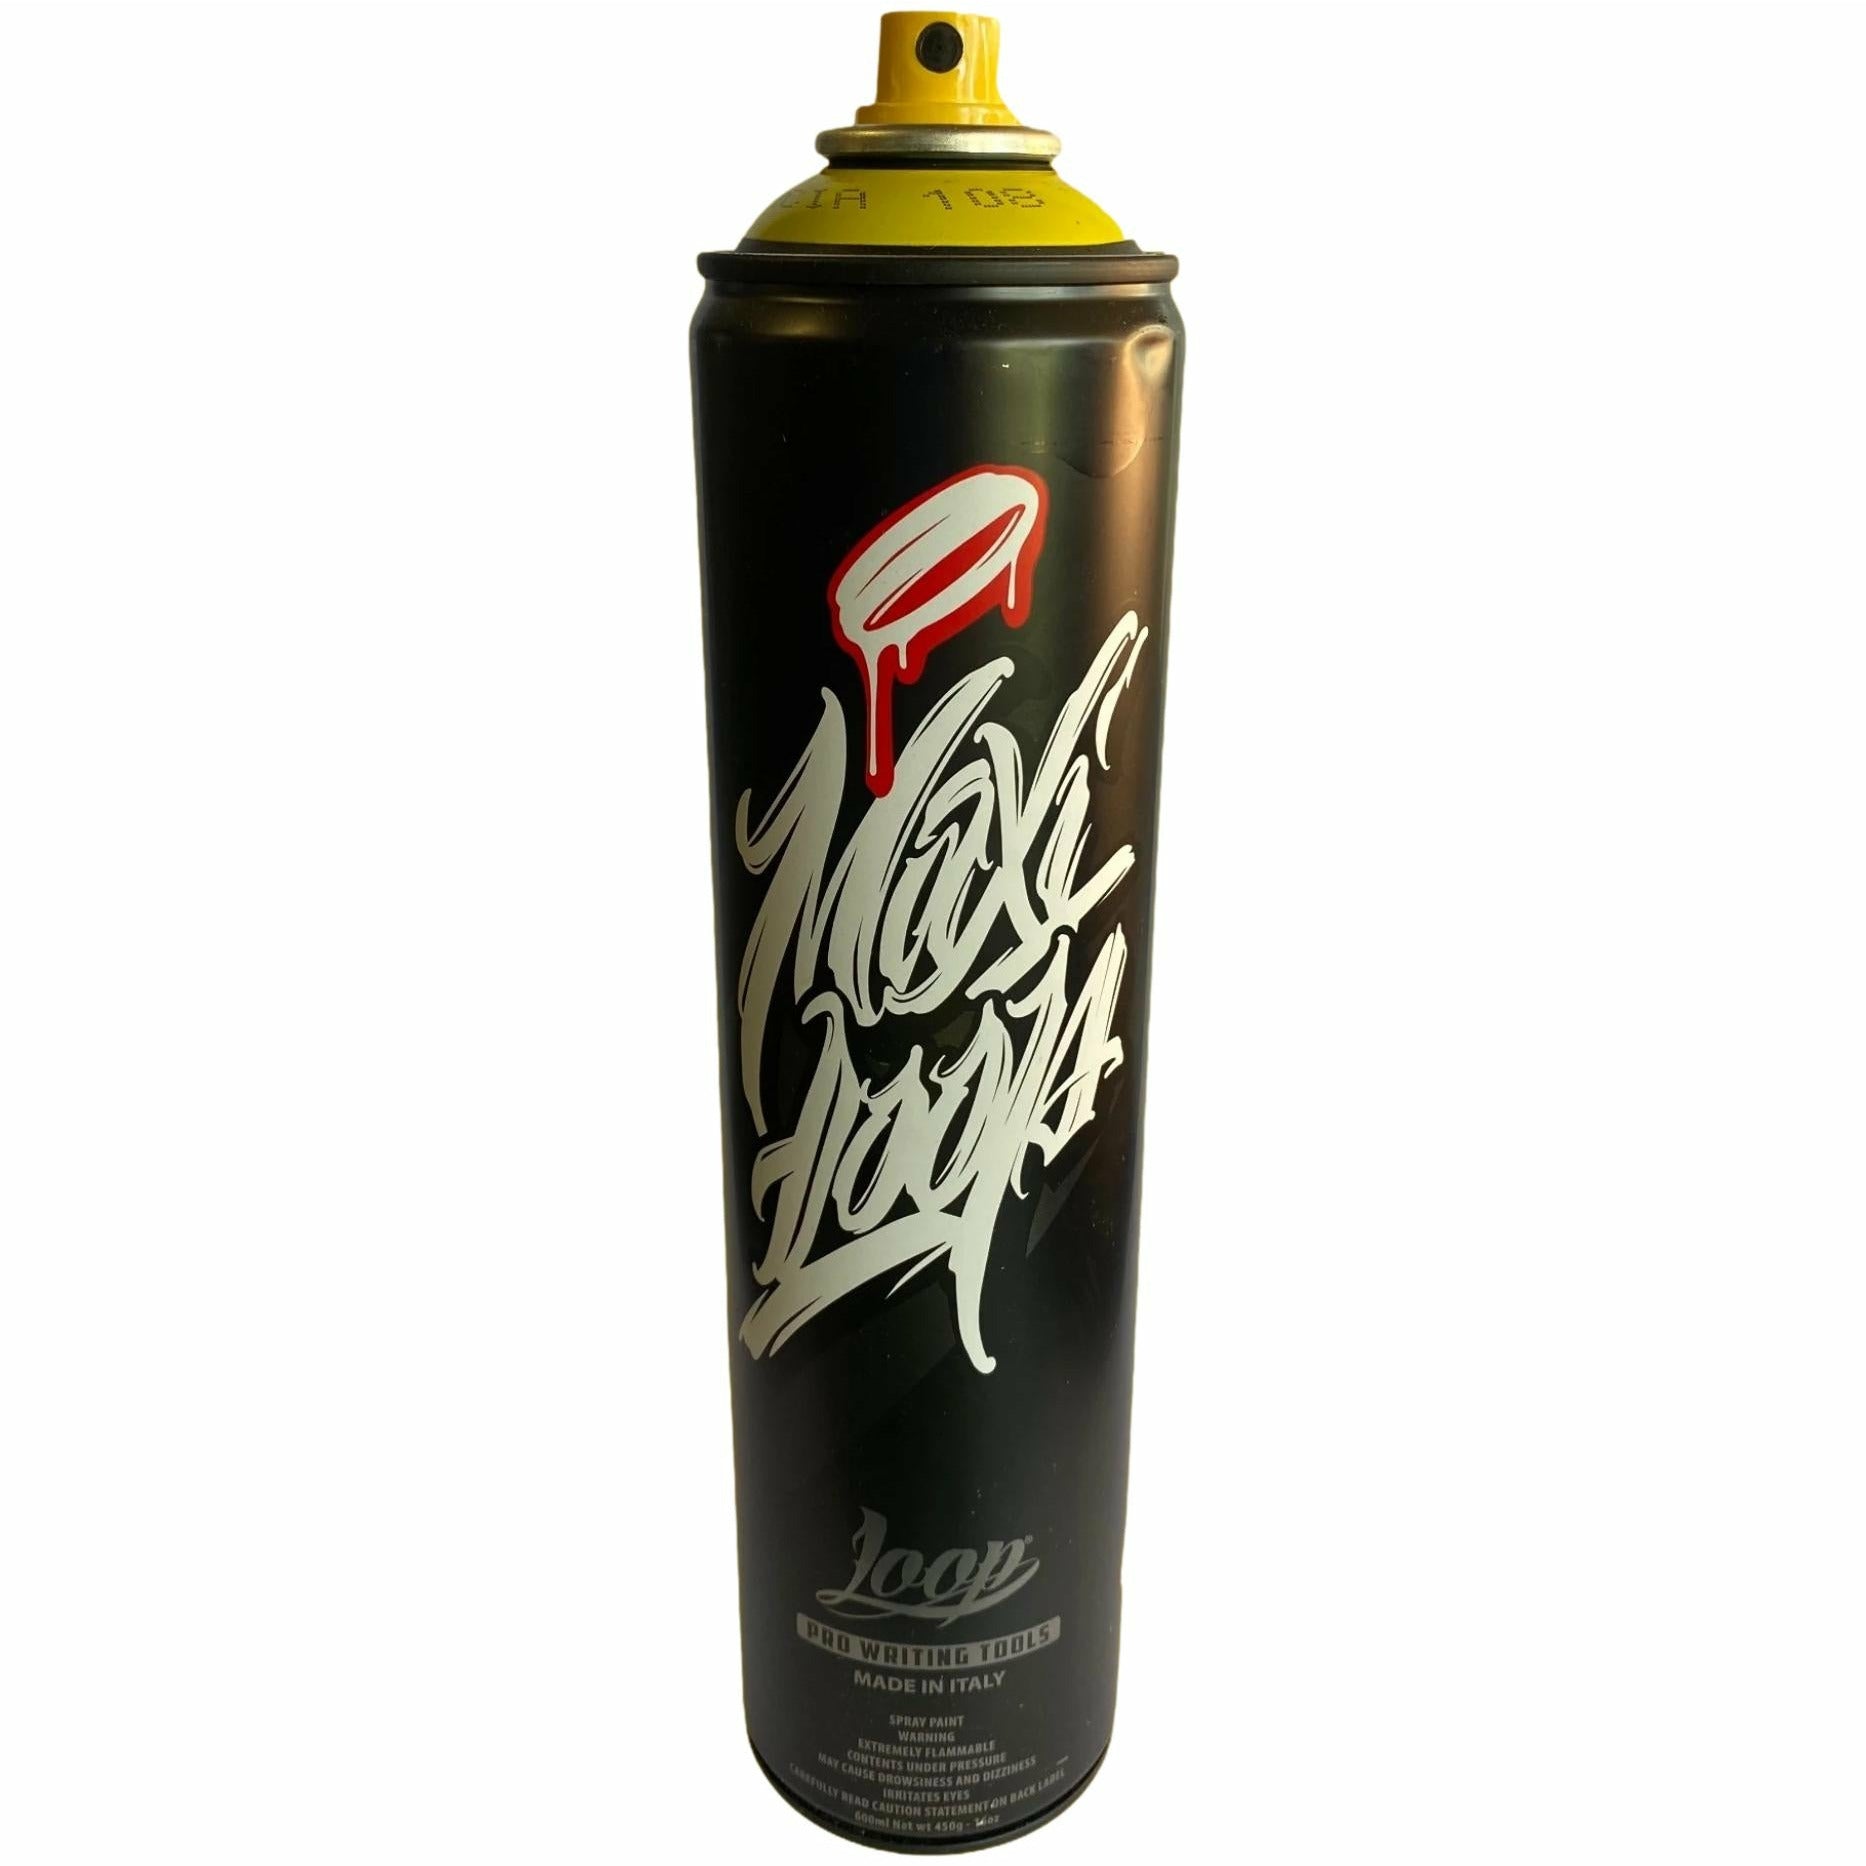 Loop Spray Paint 600ml Maxi - Valencia Yellow